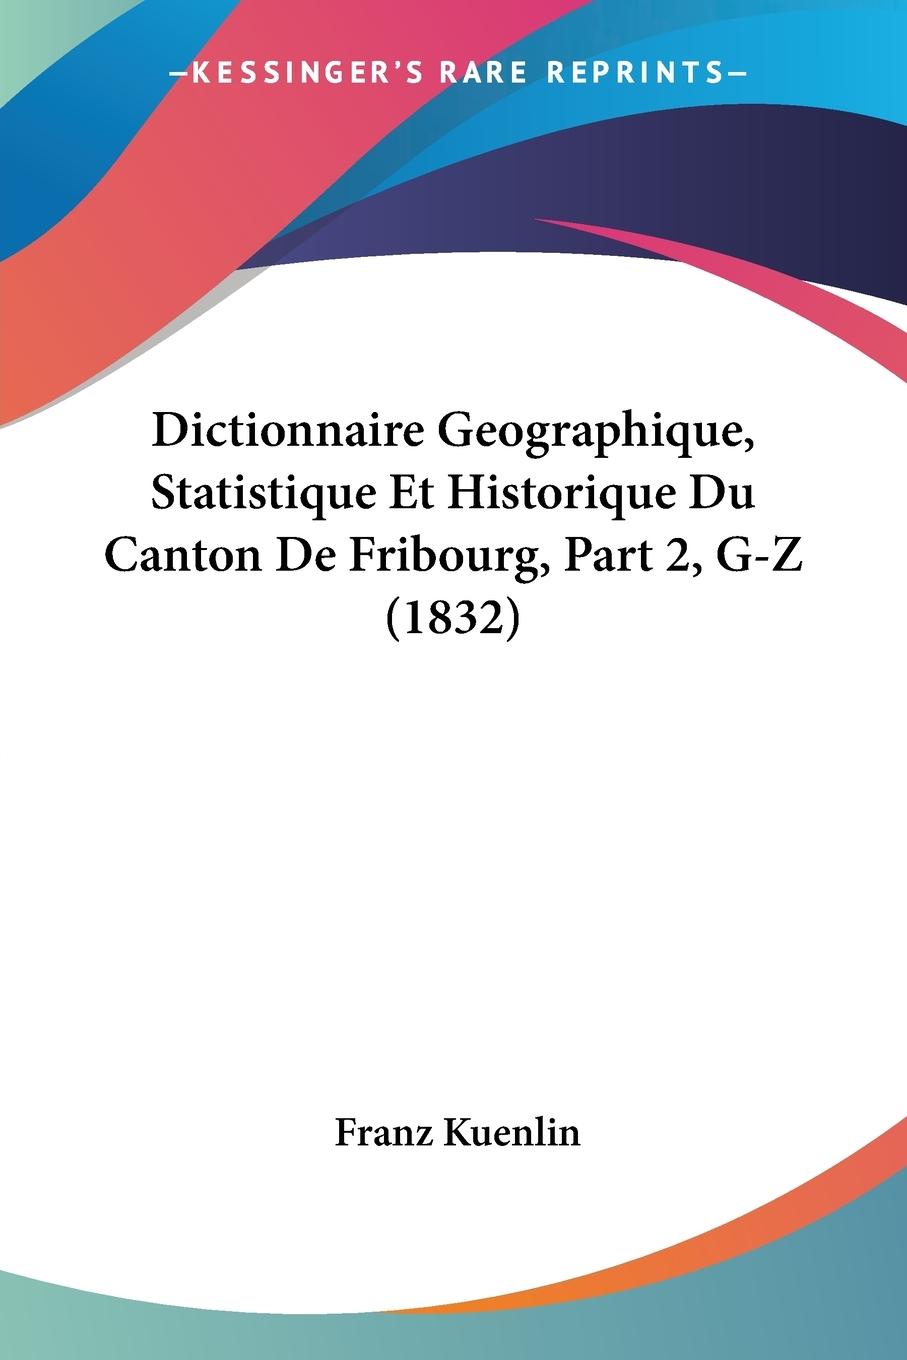 Dictionnaire Geographique, Statistique Et Historique Du Canton De Fribourg, Part 2, G-Z (1832) - Kuenlin, Franz